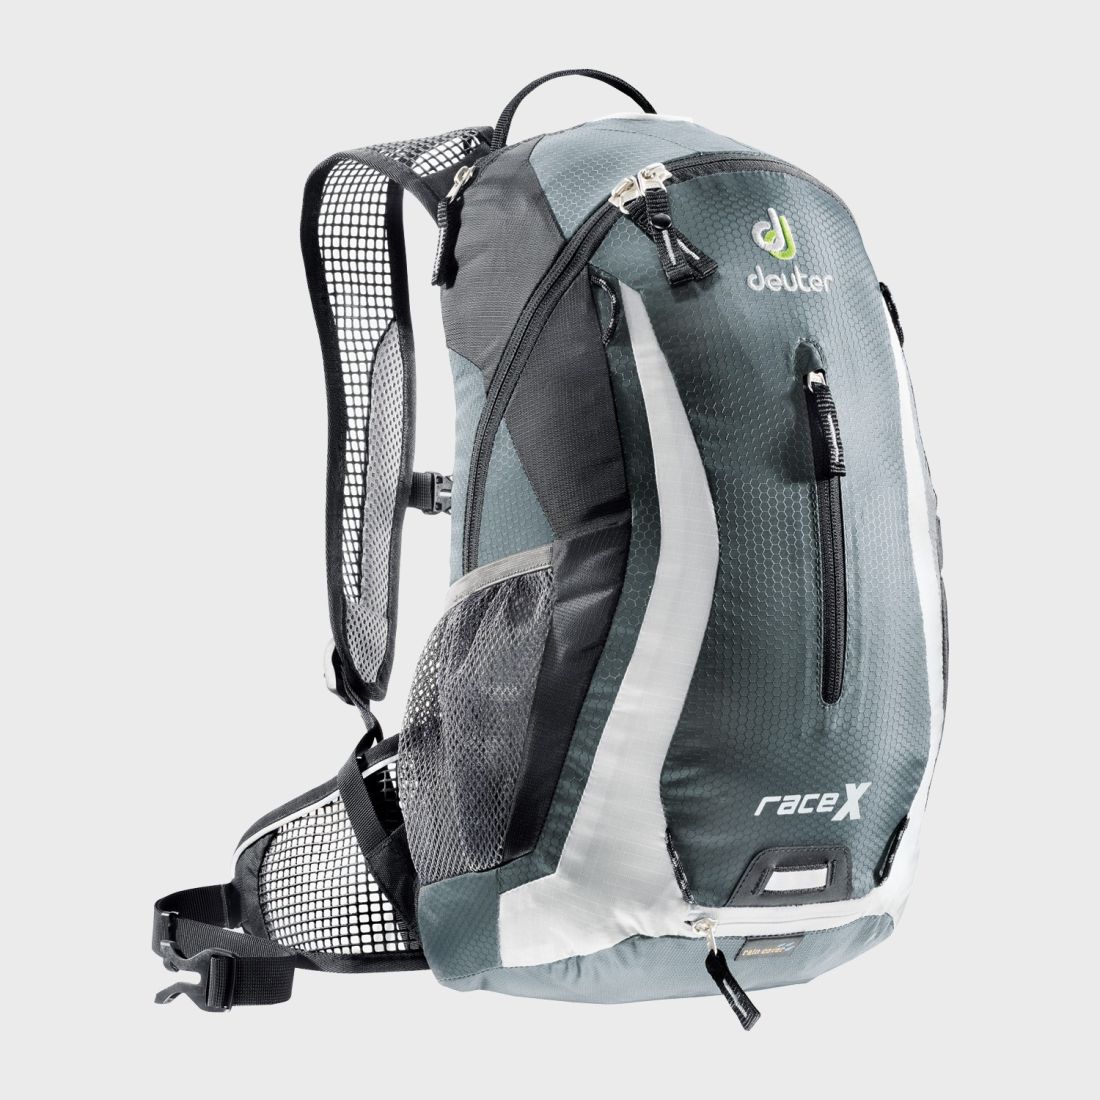 Deuter - Компактный рюкзак Race X 12